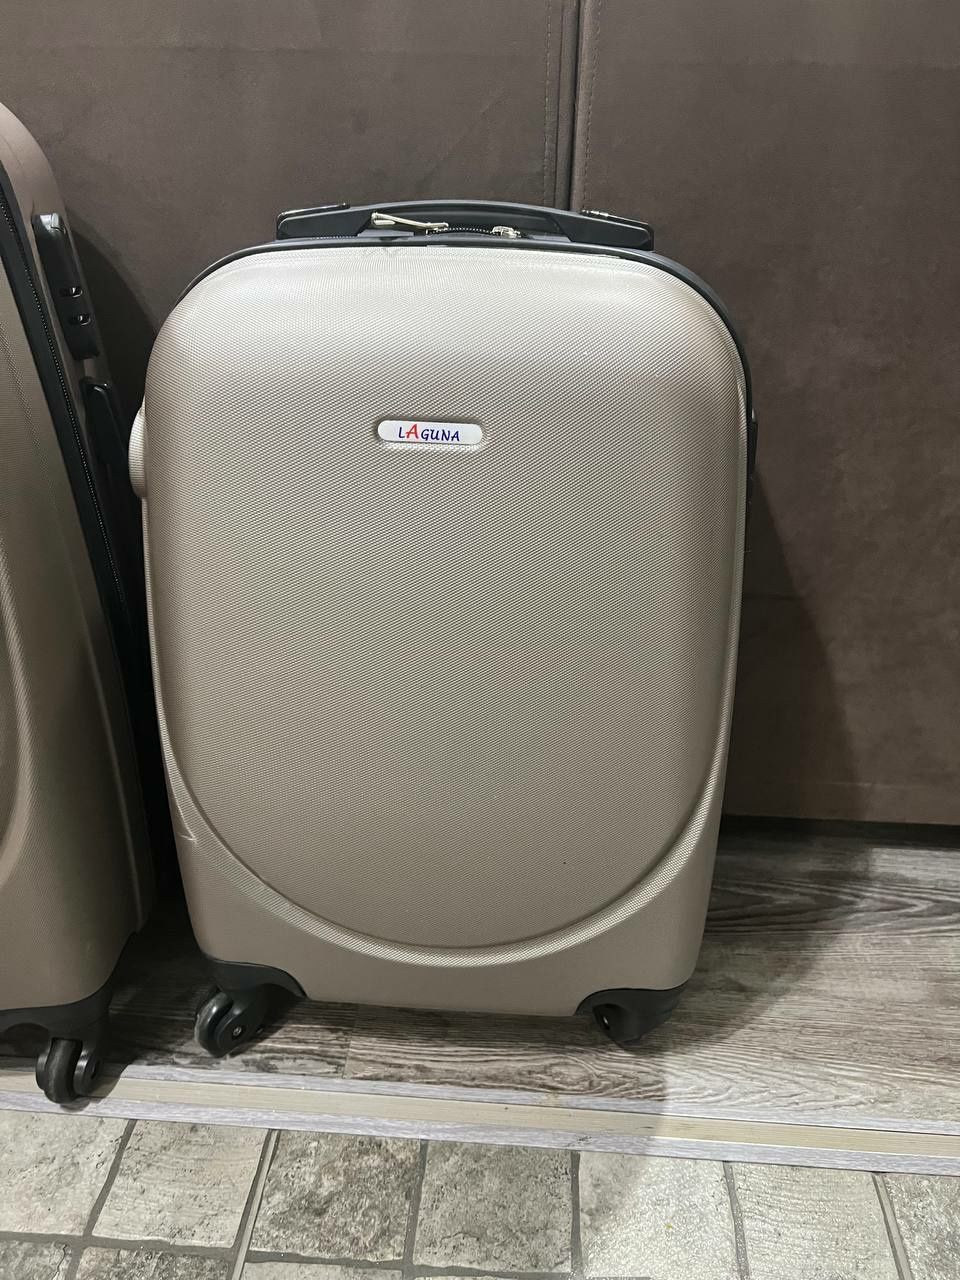 Новые 3 чемодана. Большой, средний, маленький 1,500